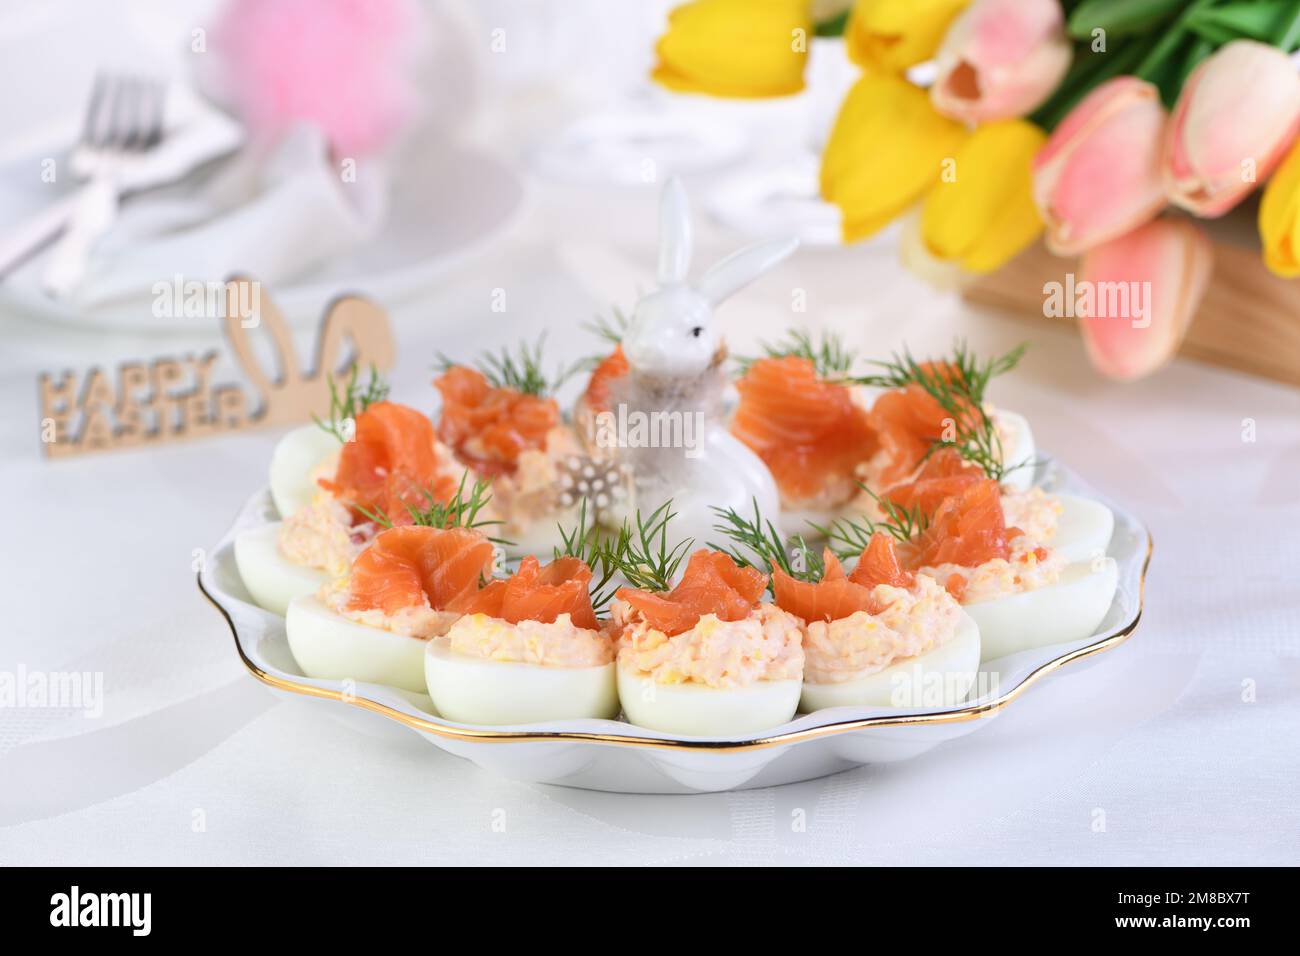 Vorspeise mit Eiern gefüllte Lachspastete und Eigelb mit Lachsscheiben. Idea Ostertisch Stockfoto